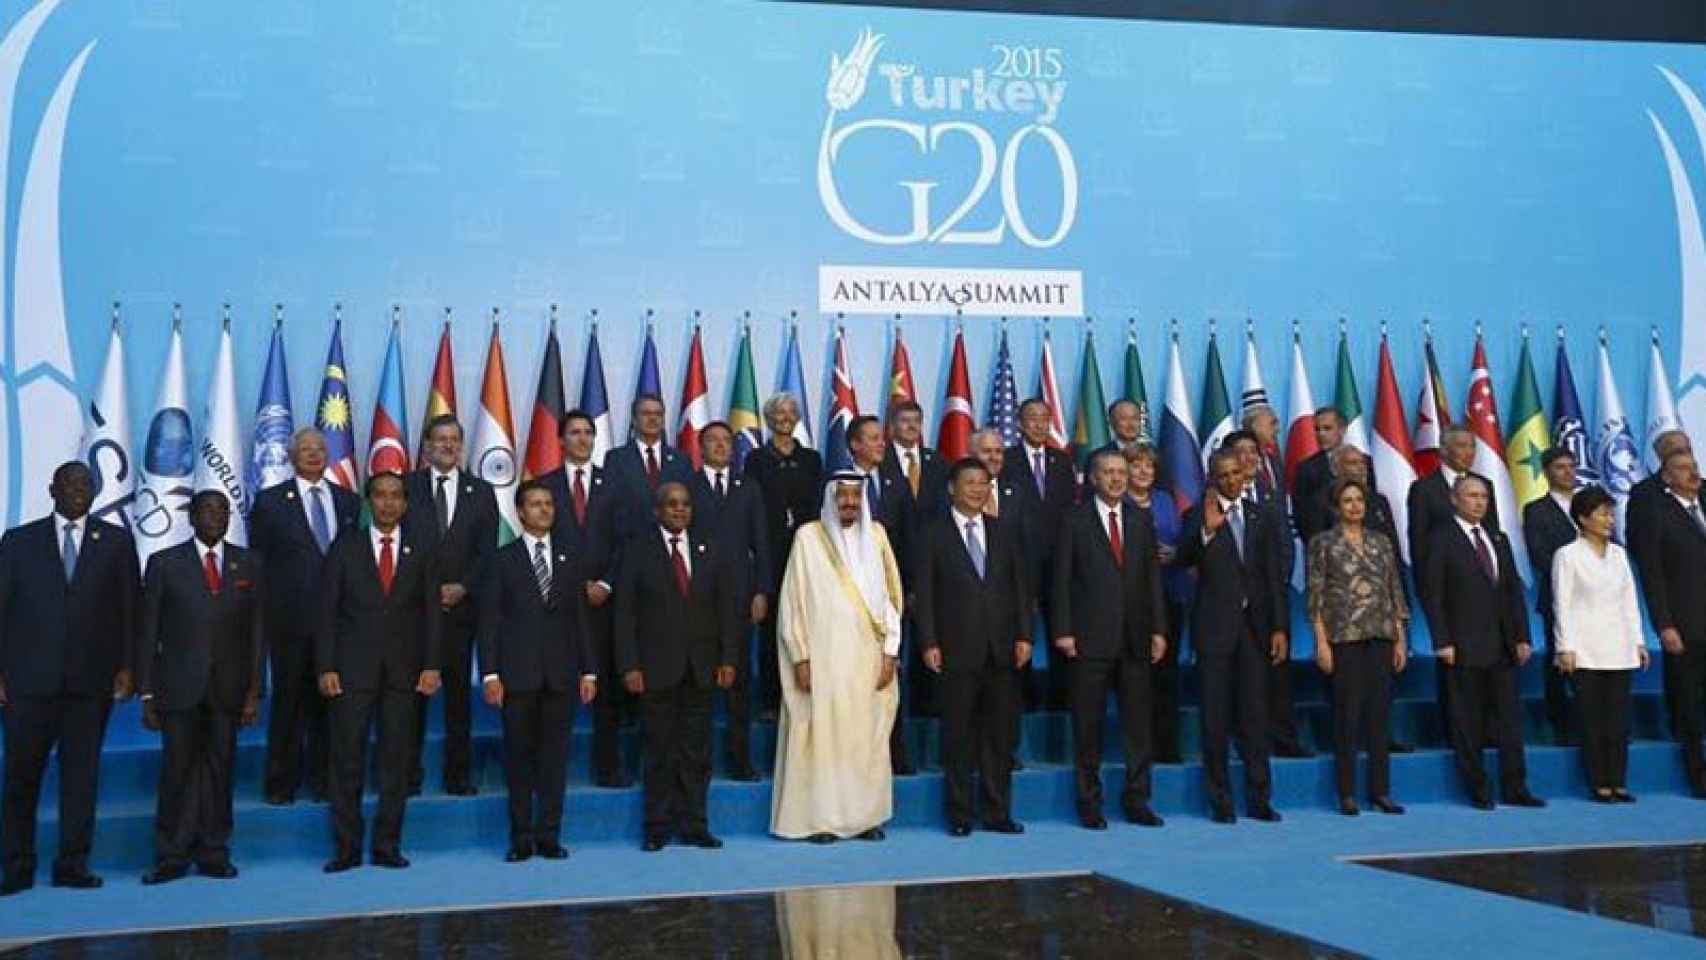 Foto de familia de los asistentes a la cumbre del G20 en Turquía de este fin de semana.